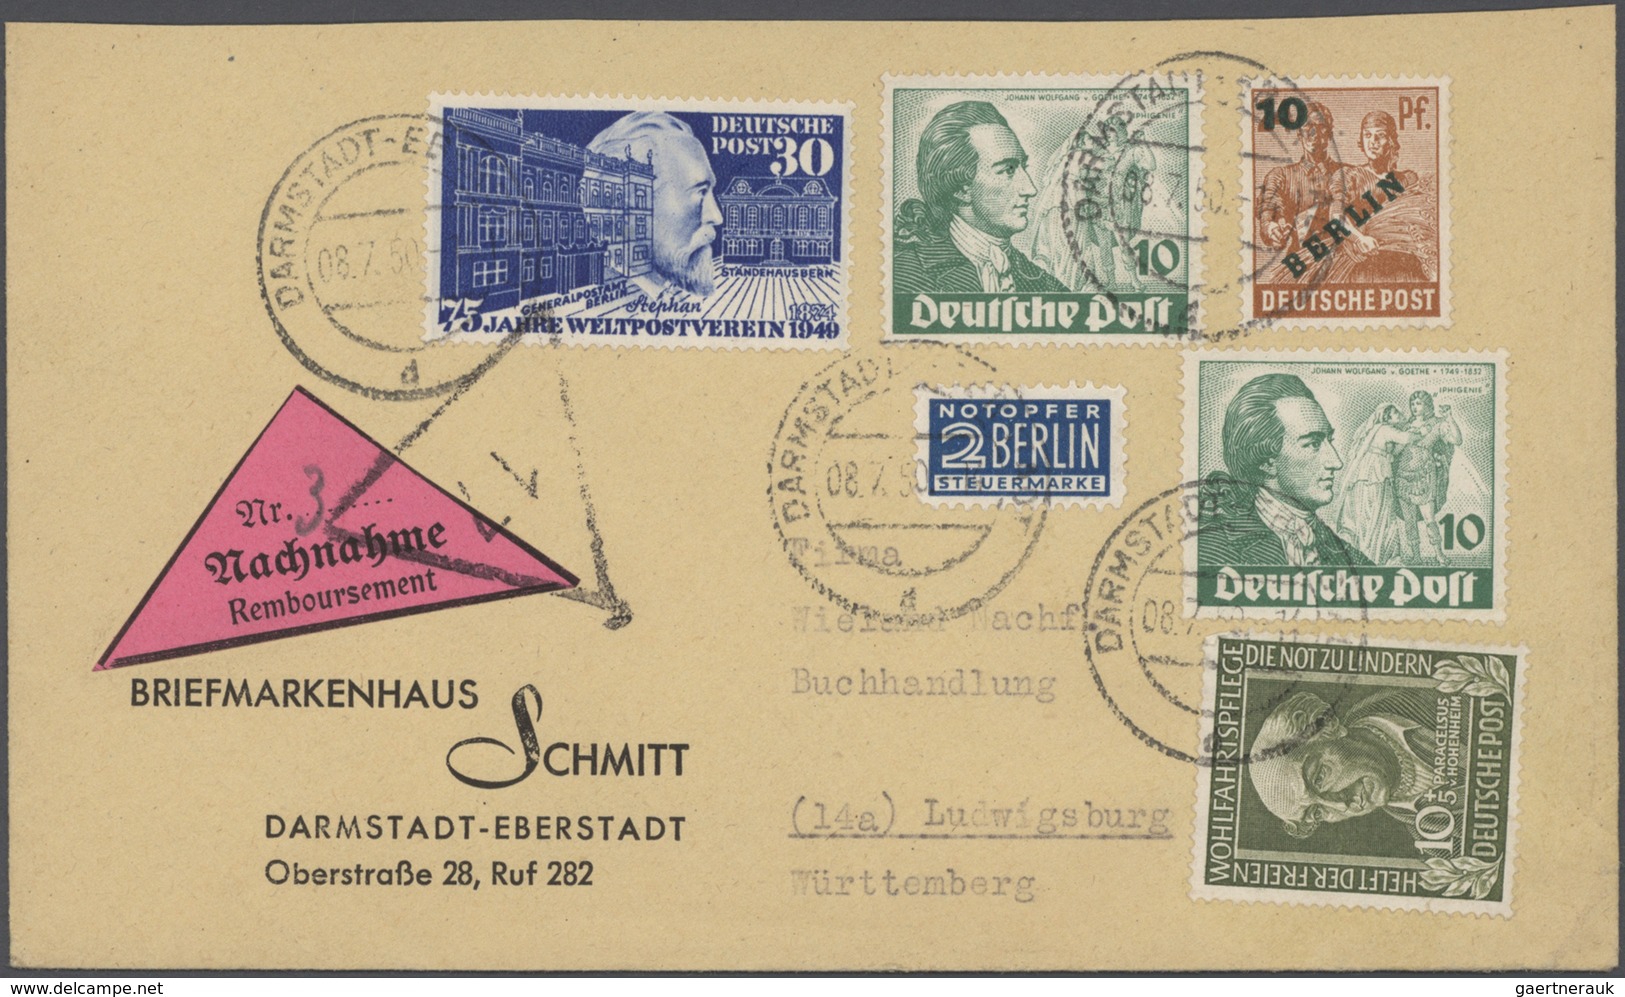 31024 Deutschland: 1860-1960, vielseitige Partie mit geschätzt 1.000 Briefen, Ganzsachen und Belegen, dabe